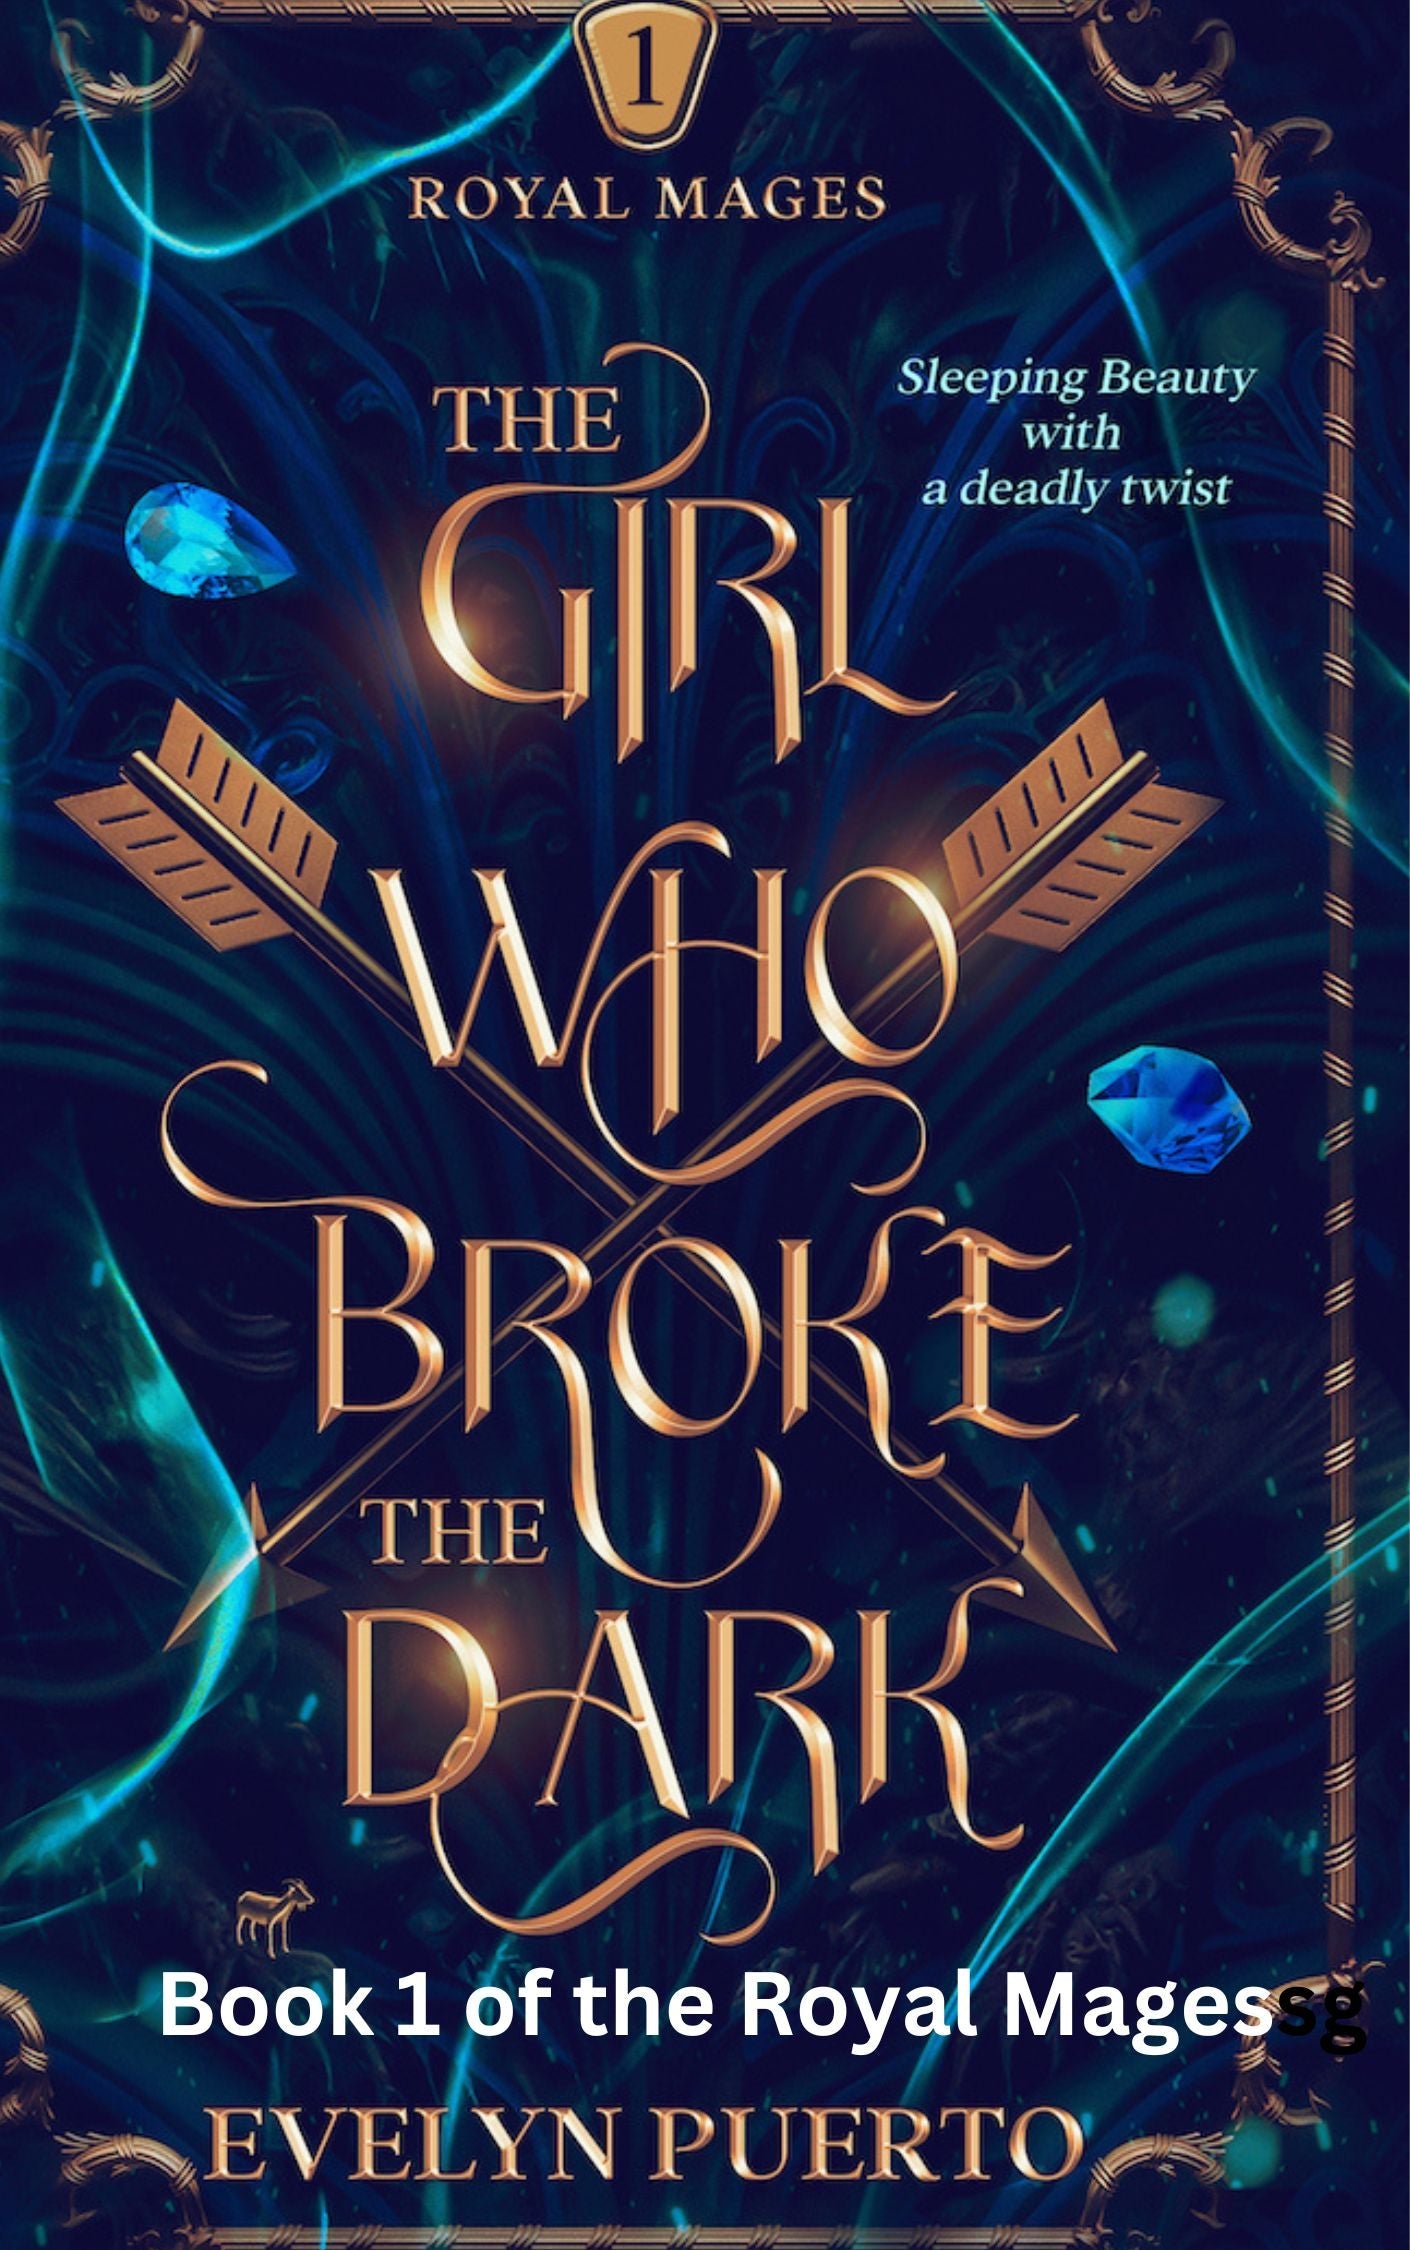 The Girl Who Broke the Dark (Paperback)